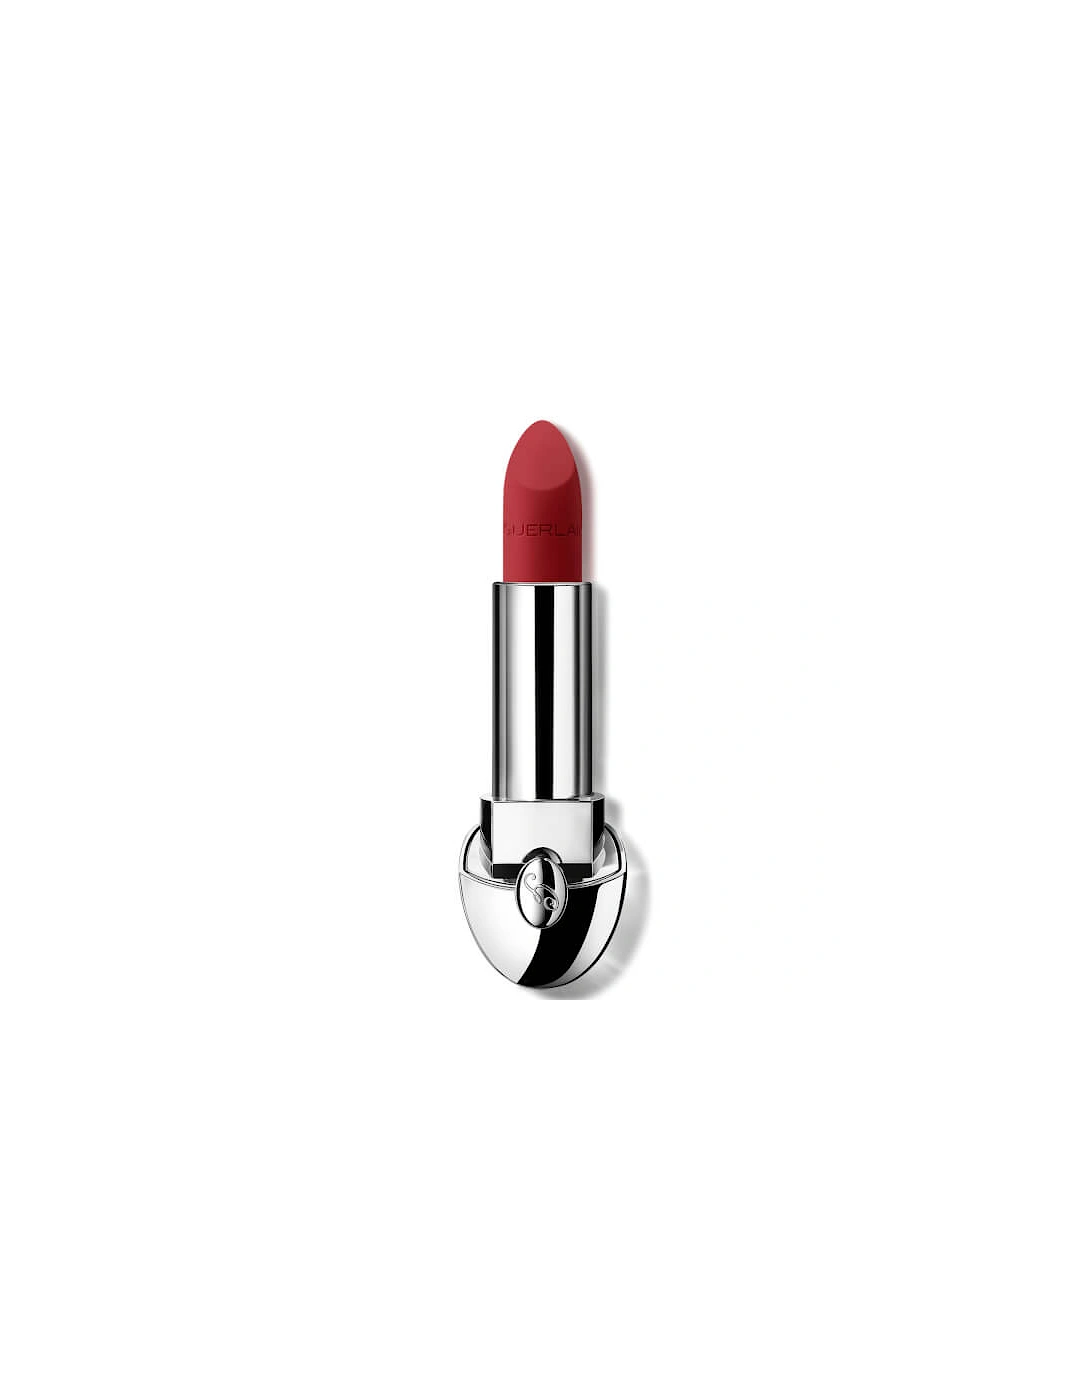 Rouge G Luxurious Velvet 16 Hour Wear High-Pigmentation Velvet Matte Lipstick - 880 Ruby Red, 2 of 1